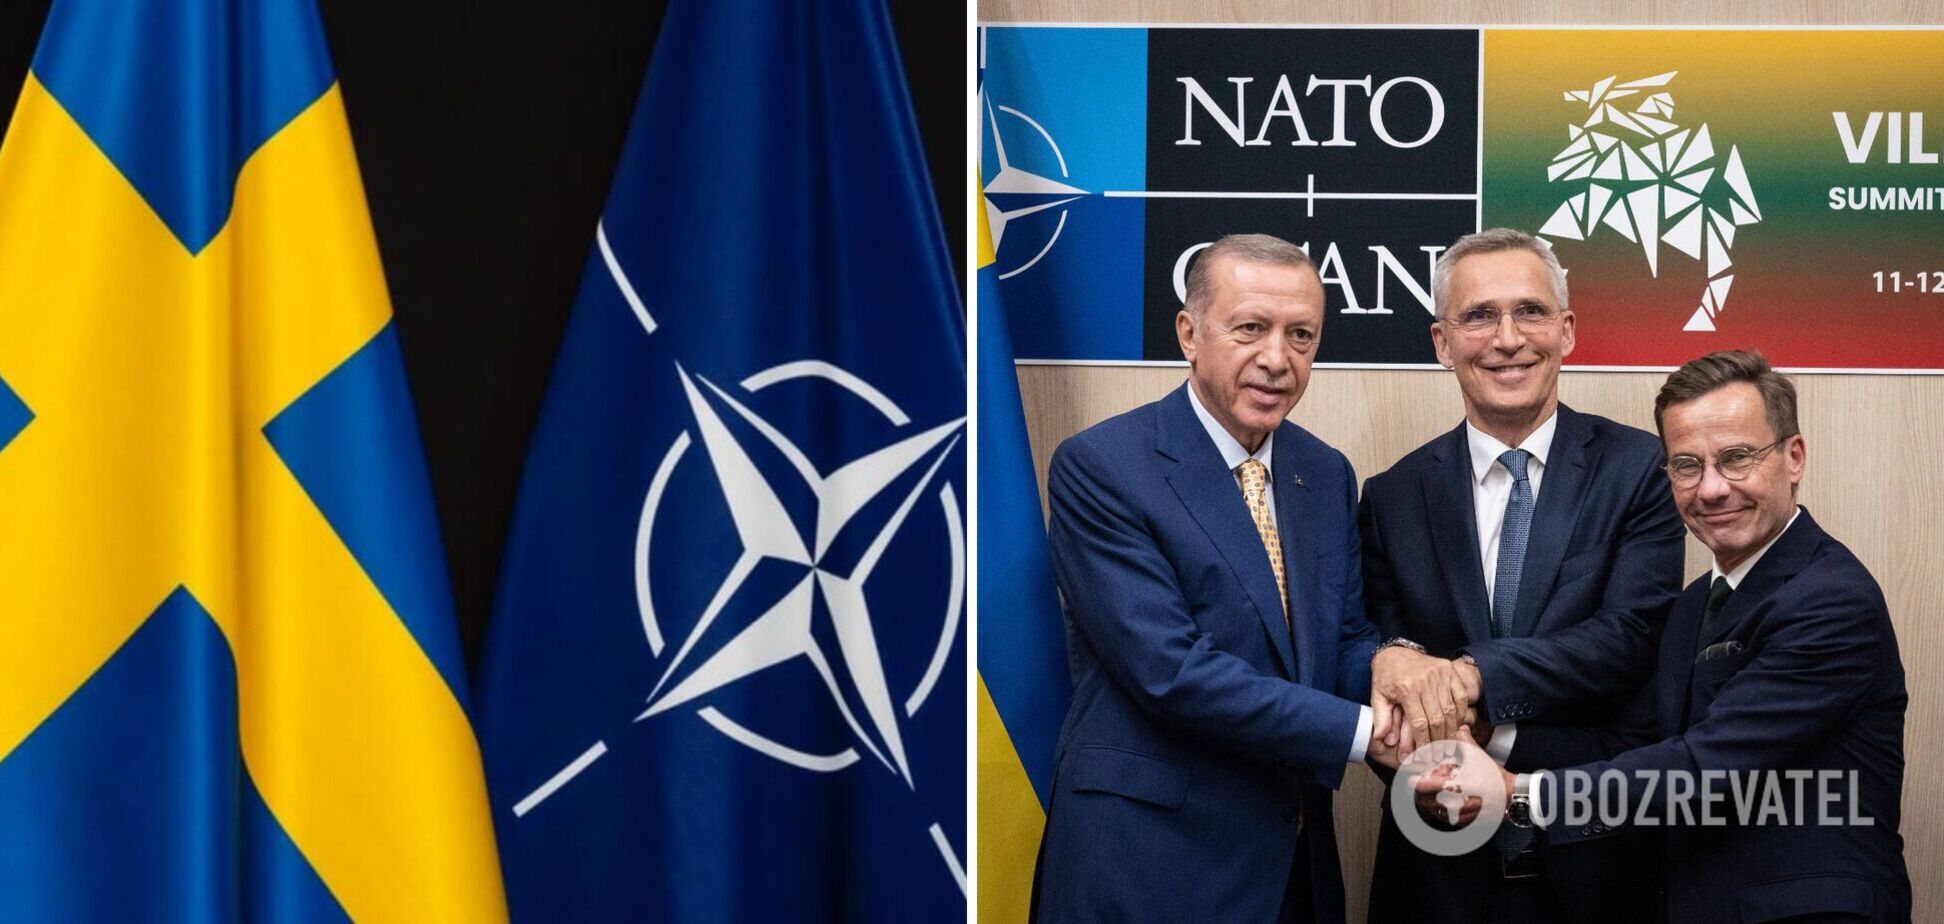 Реальний переможець саміту НАТО – Ердоган, або Чому Україні треба дивитися на Туреччину